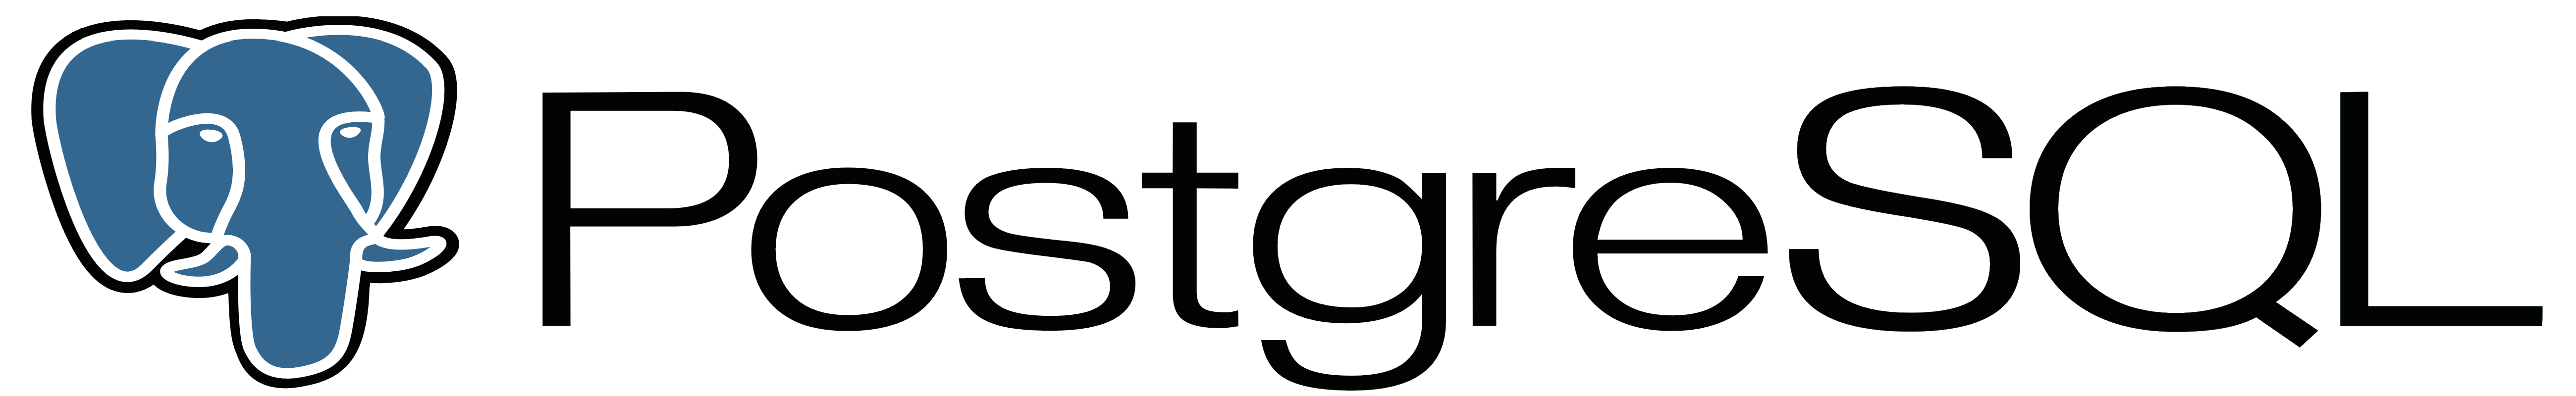 postgresql logo-1